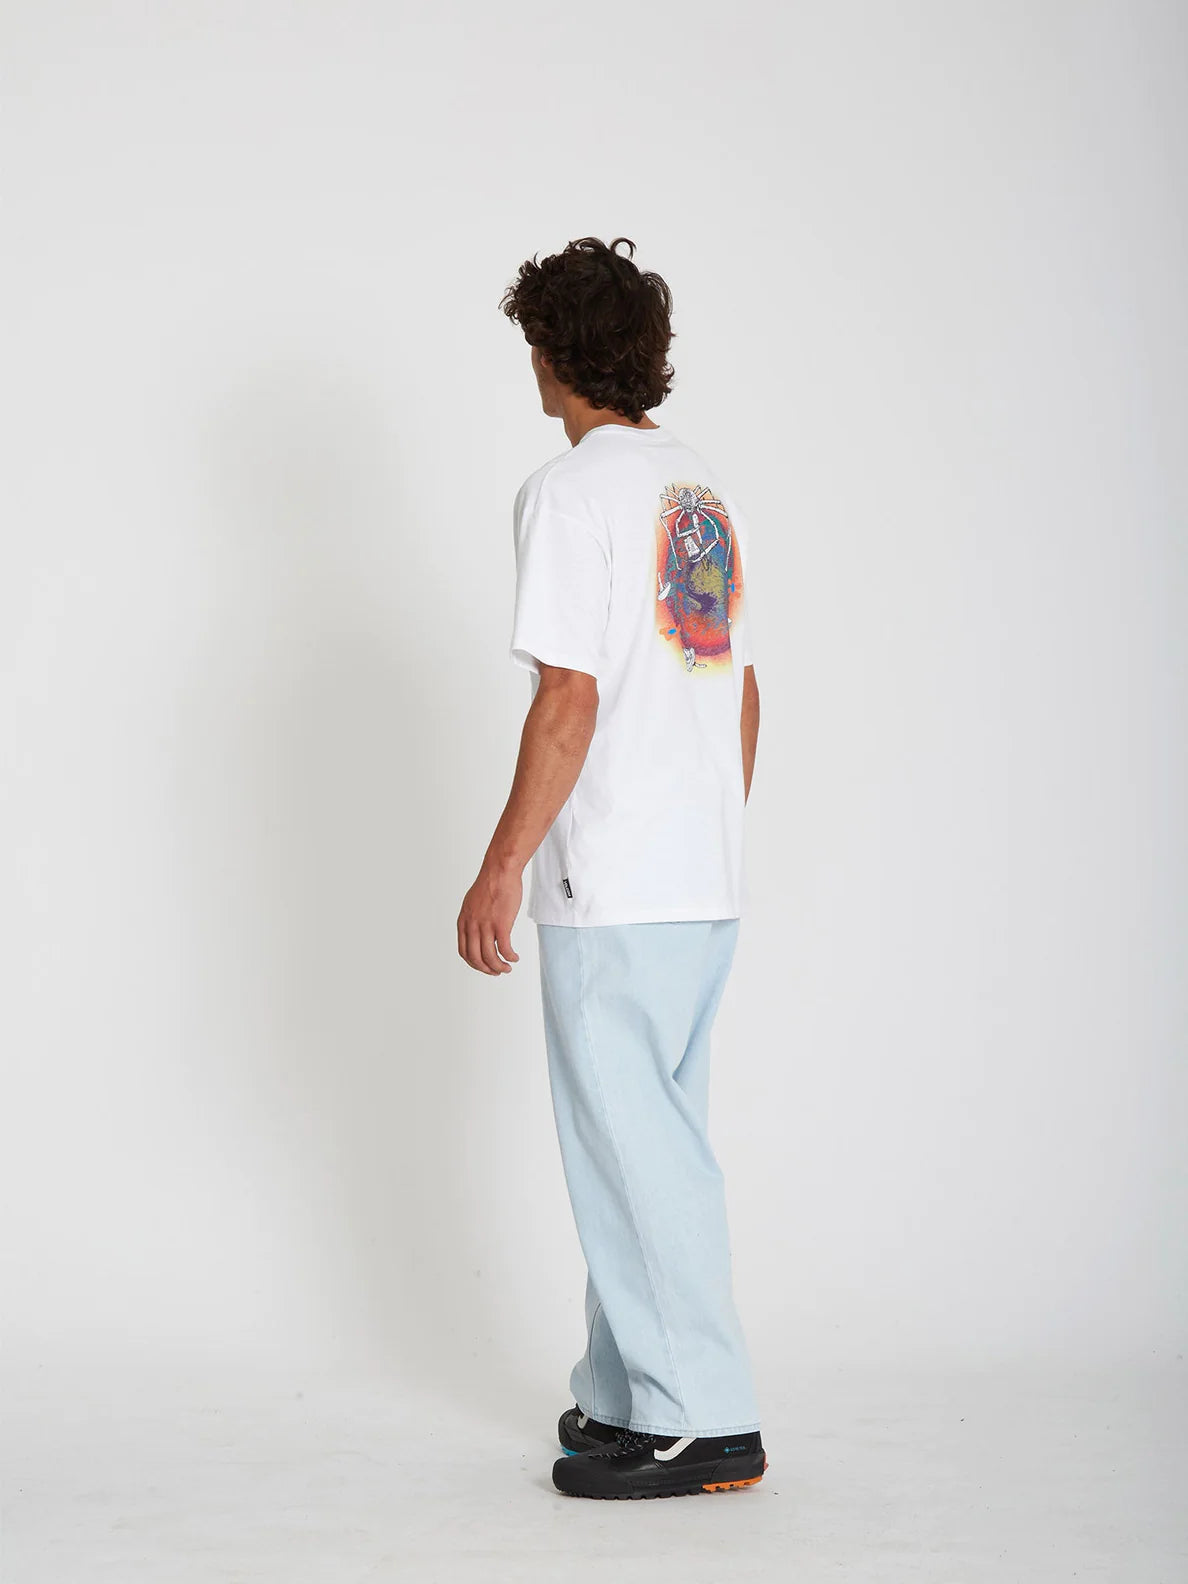 Volcom Chrissie Abbott x French 2 T-Shirt Weiß | Meistverkaufte Produkte | Neue Produkte | Neueste Produkte | surfdevils.com